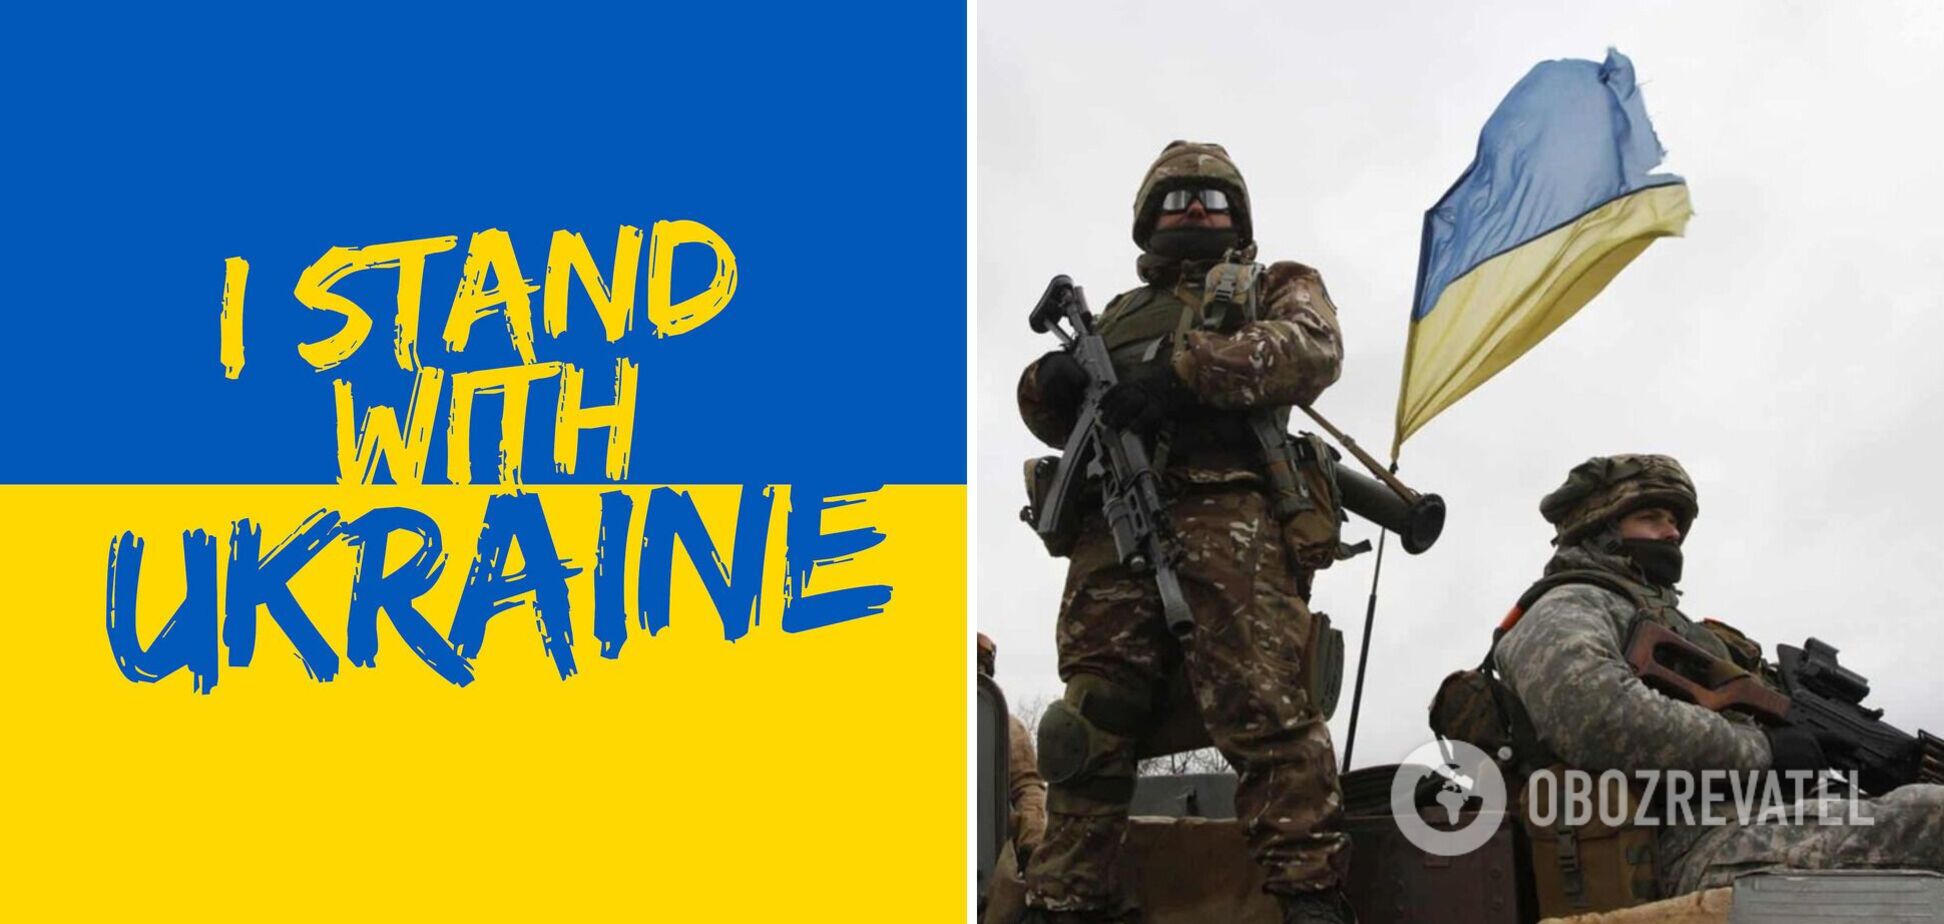 'Ми можемо зупинити війну': Zgraya Digital створила плагін, який інформує відвідувачів сайту про можливість підтримати Україну